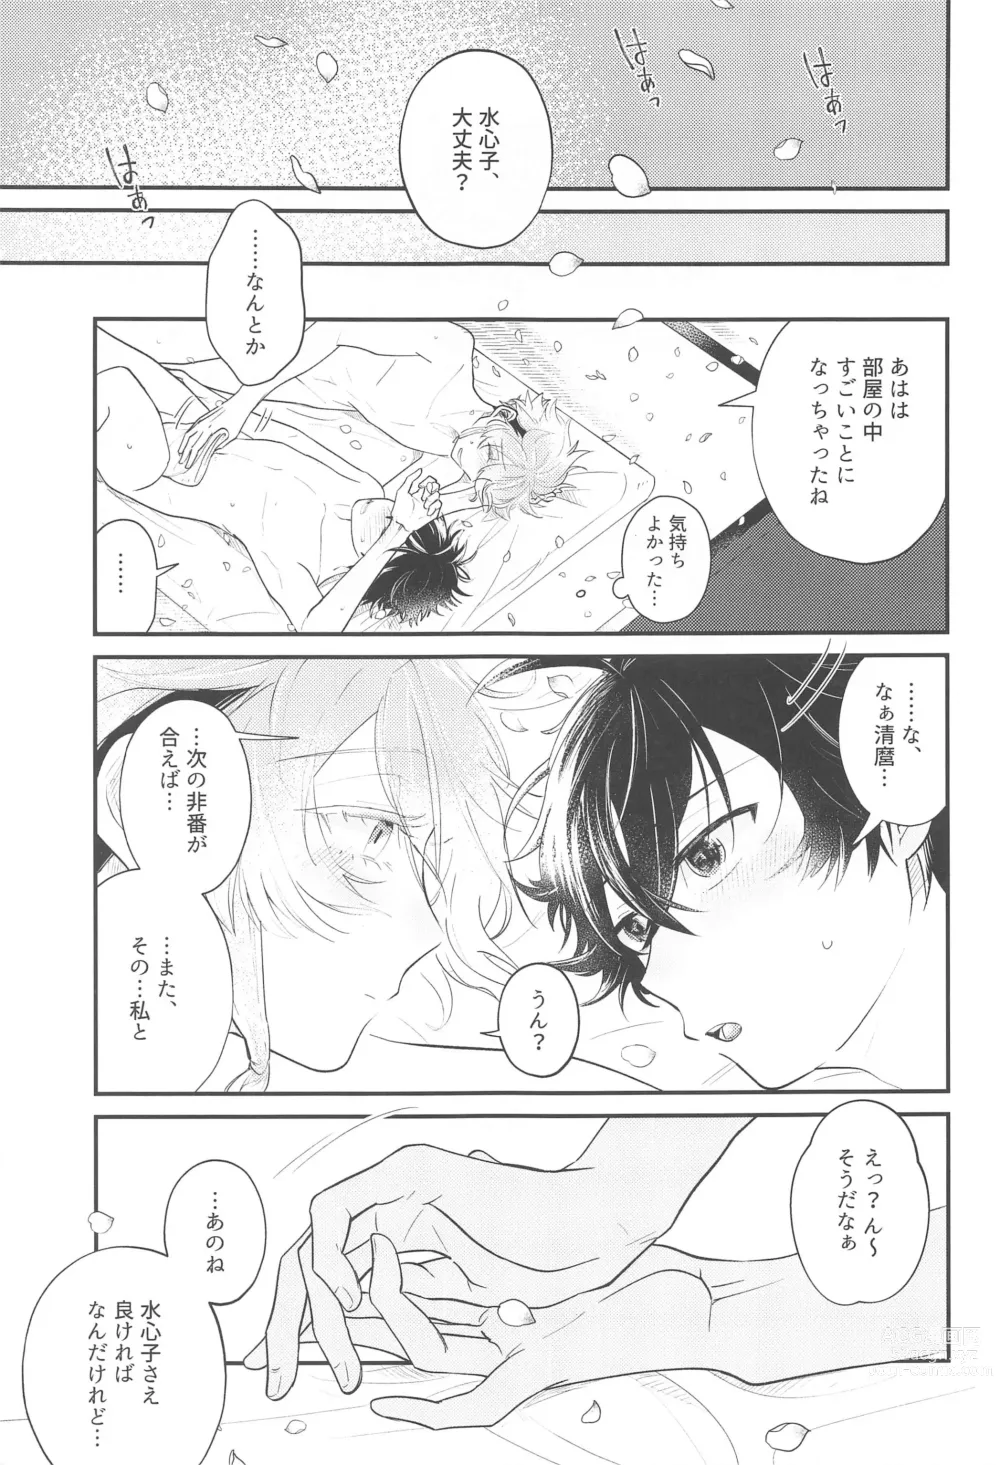 Page 22 of doujinshi Sonosaki wa Ariarito